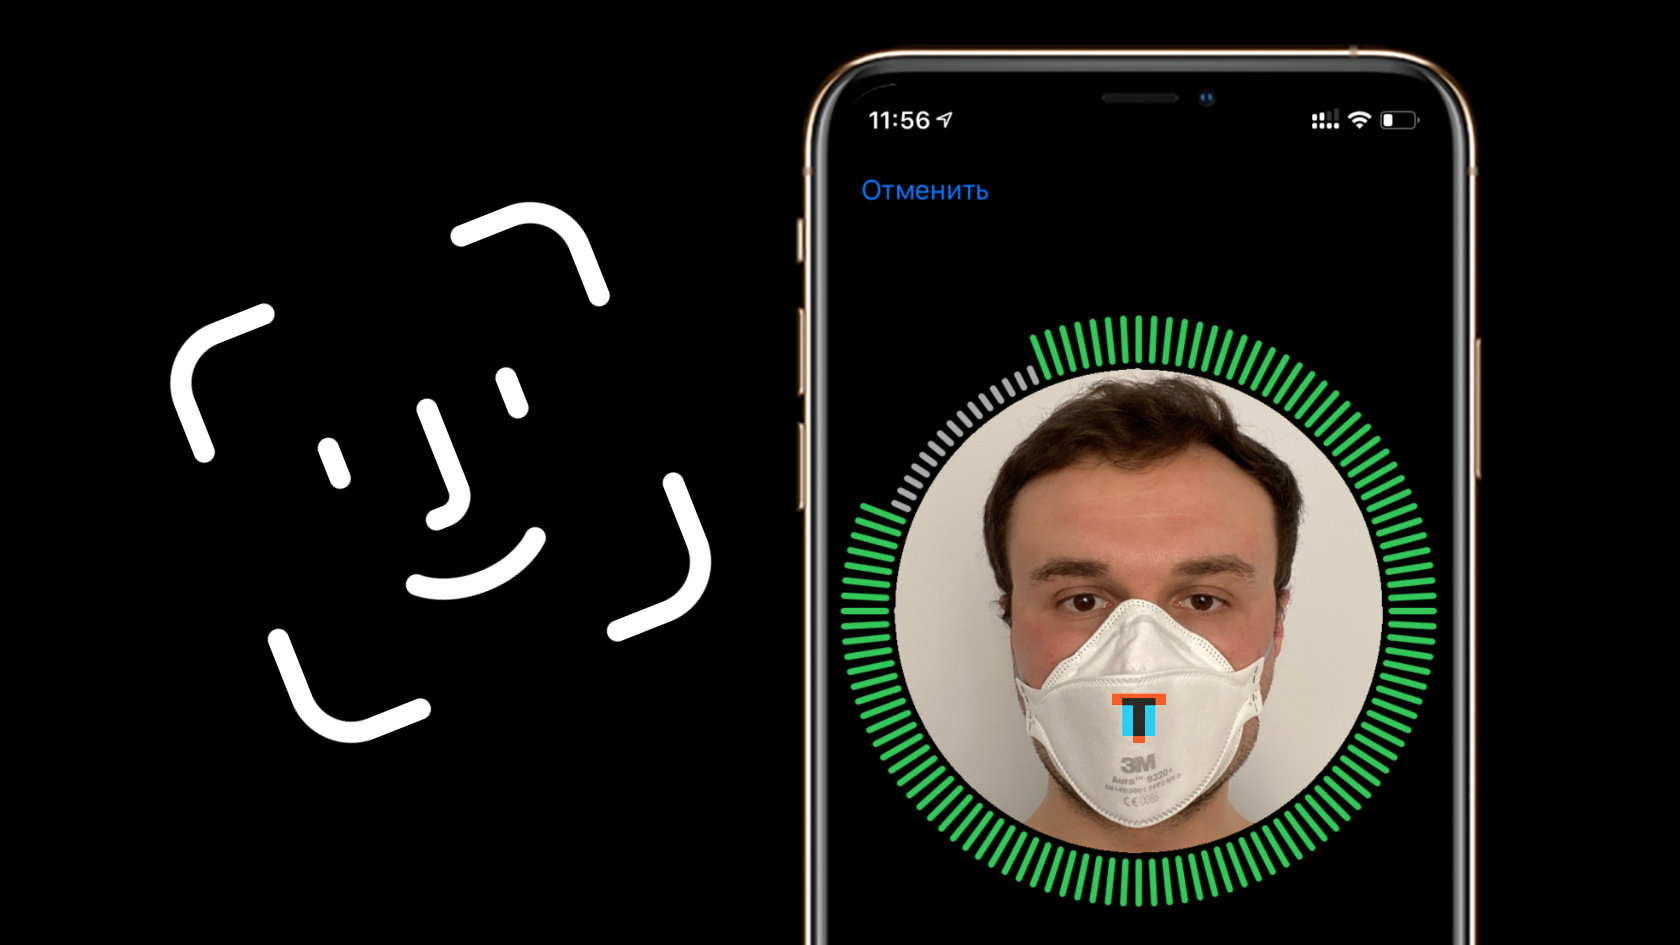 Лайфхак: как разблокировать смартфон по лицу, если на нем маска